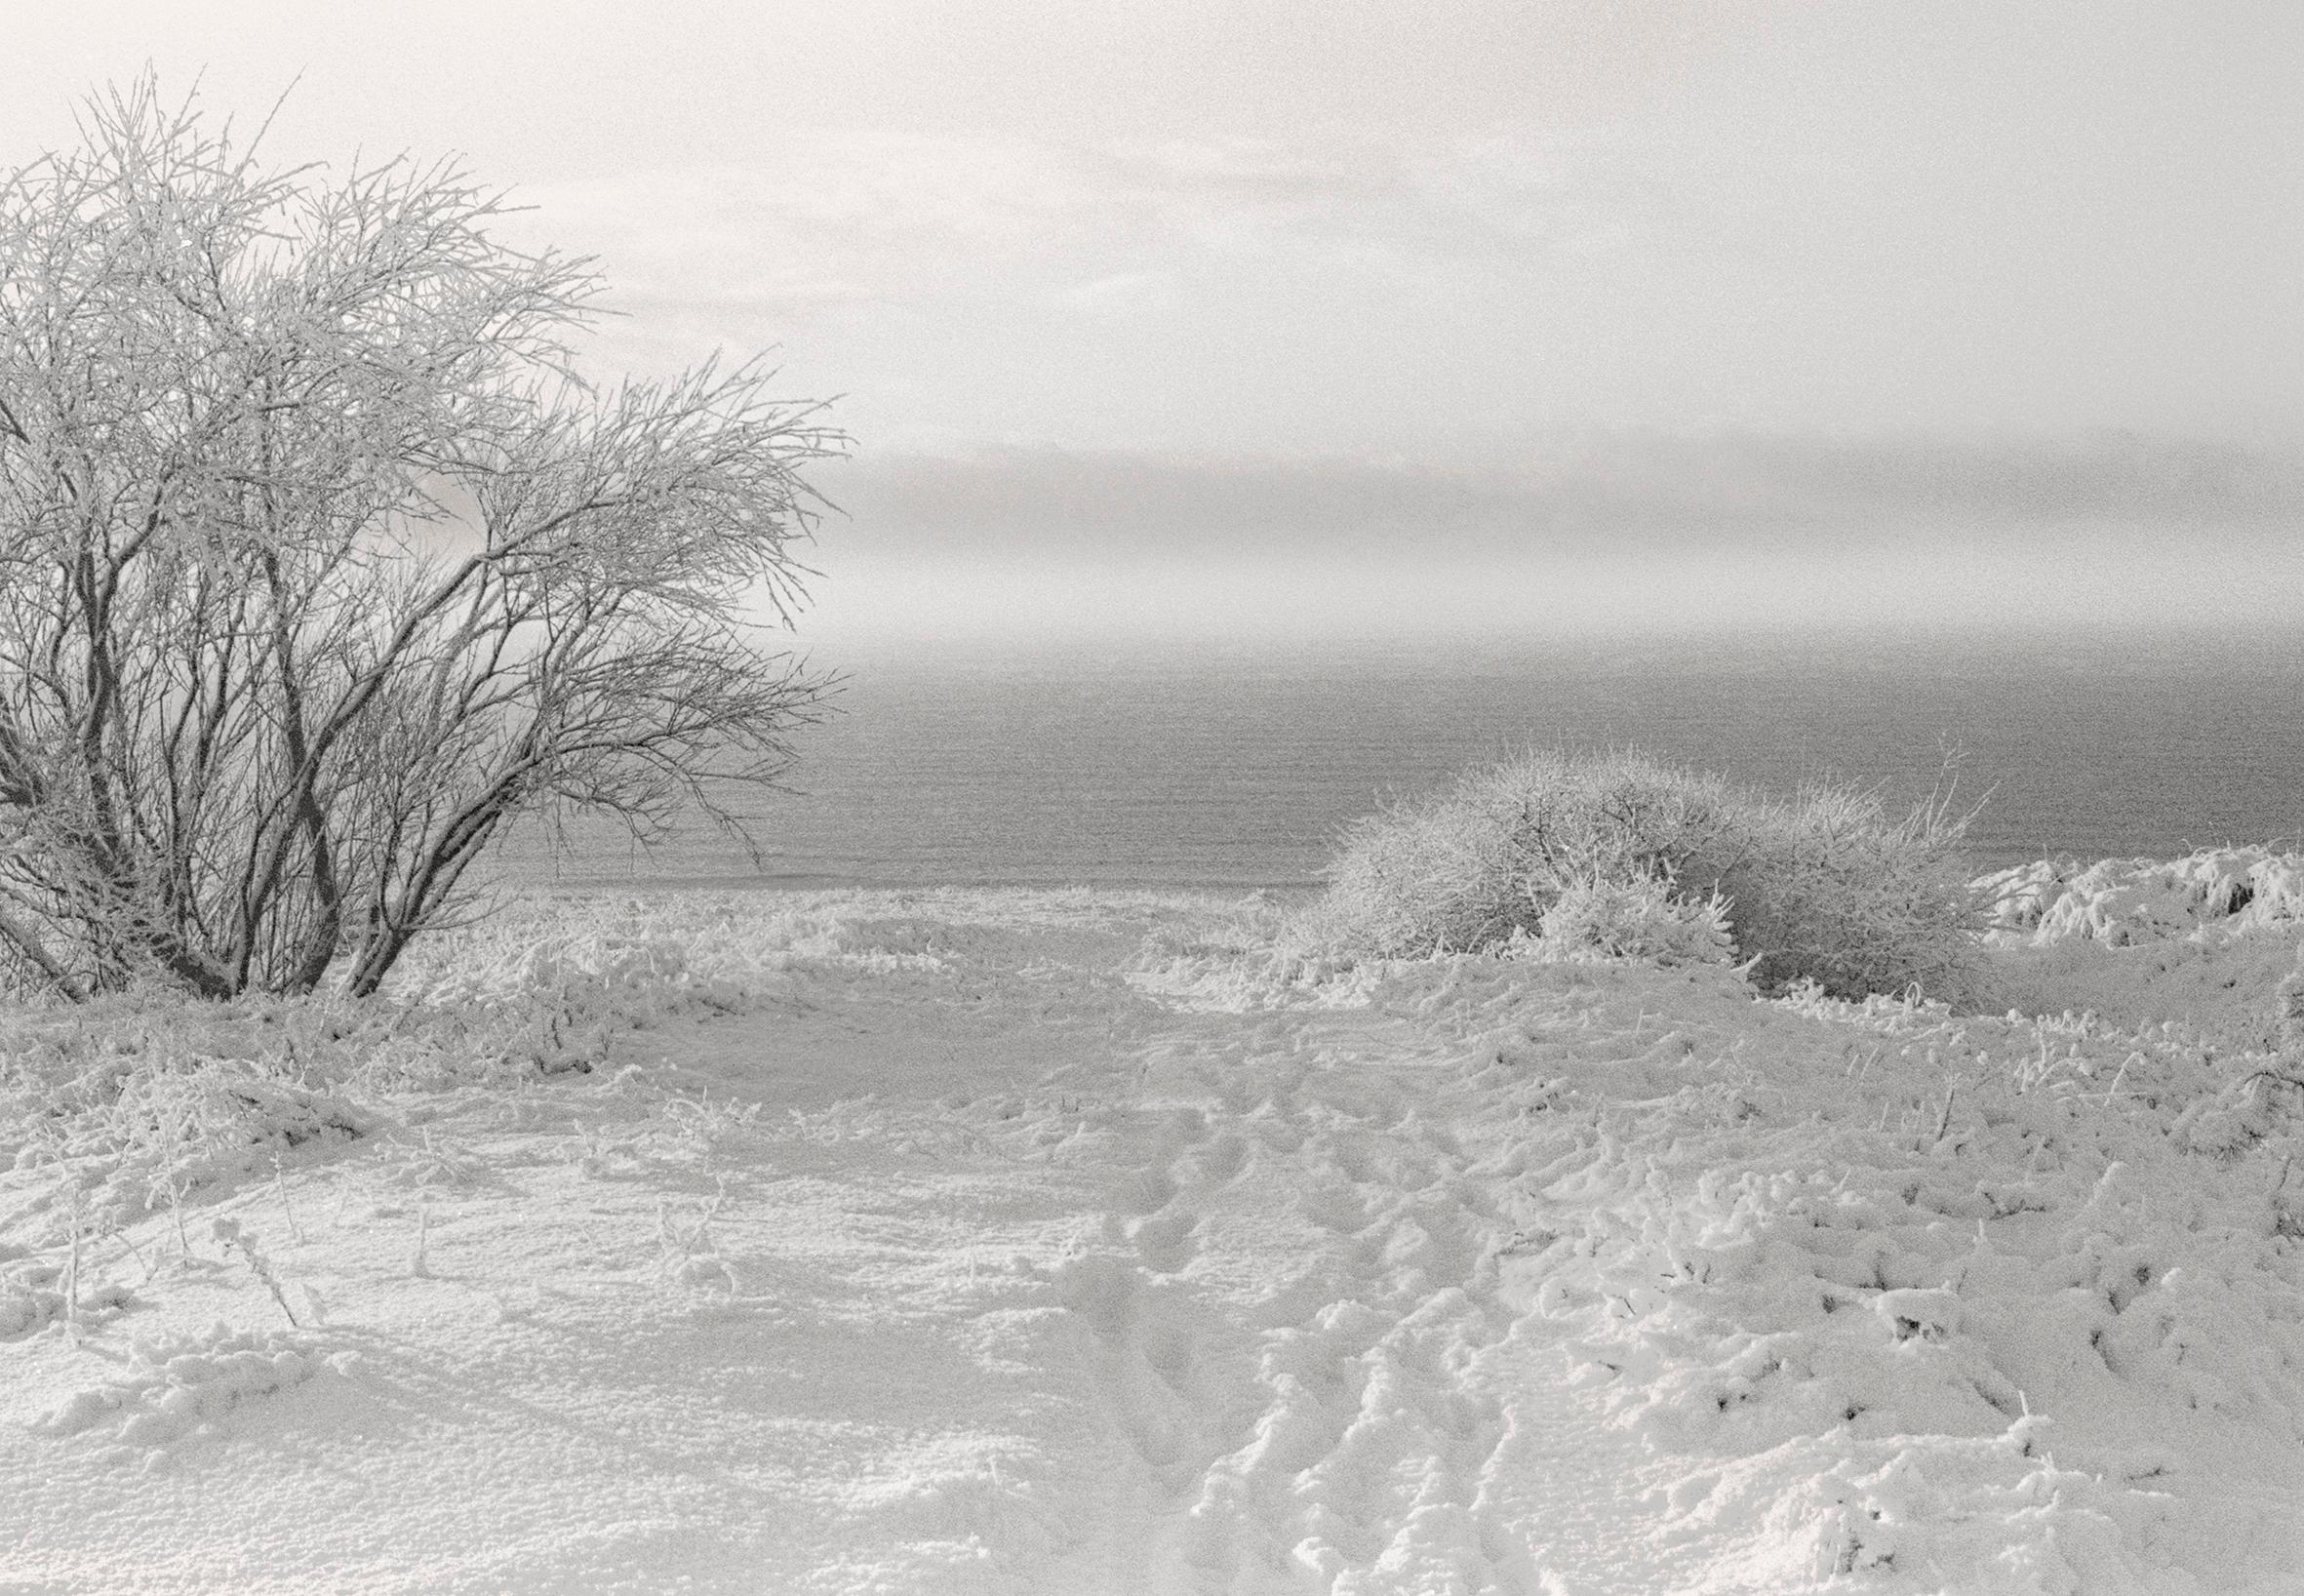 Gelée baltique #3" - photographie de paysage analogique en noir et blanc 42 x 29 cm